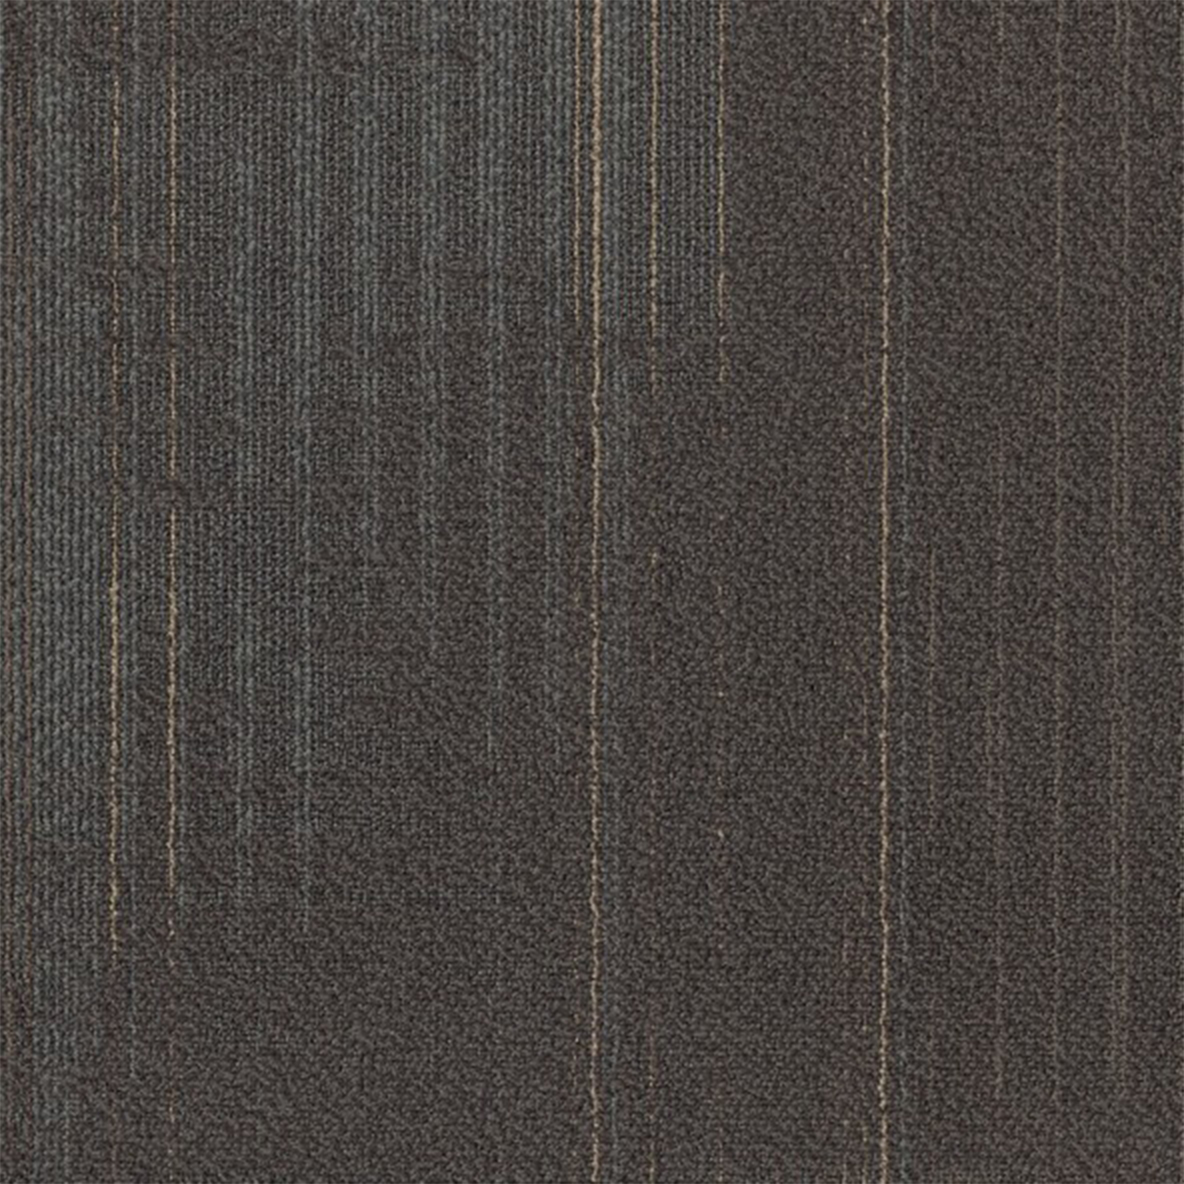 Sepia color close up Nexus Commercial Carpet Tile .42 Inch x 50x50 cm per Tile